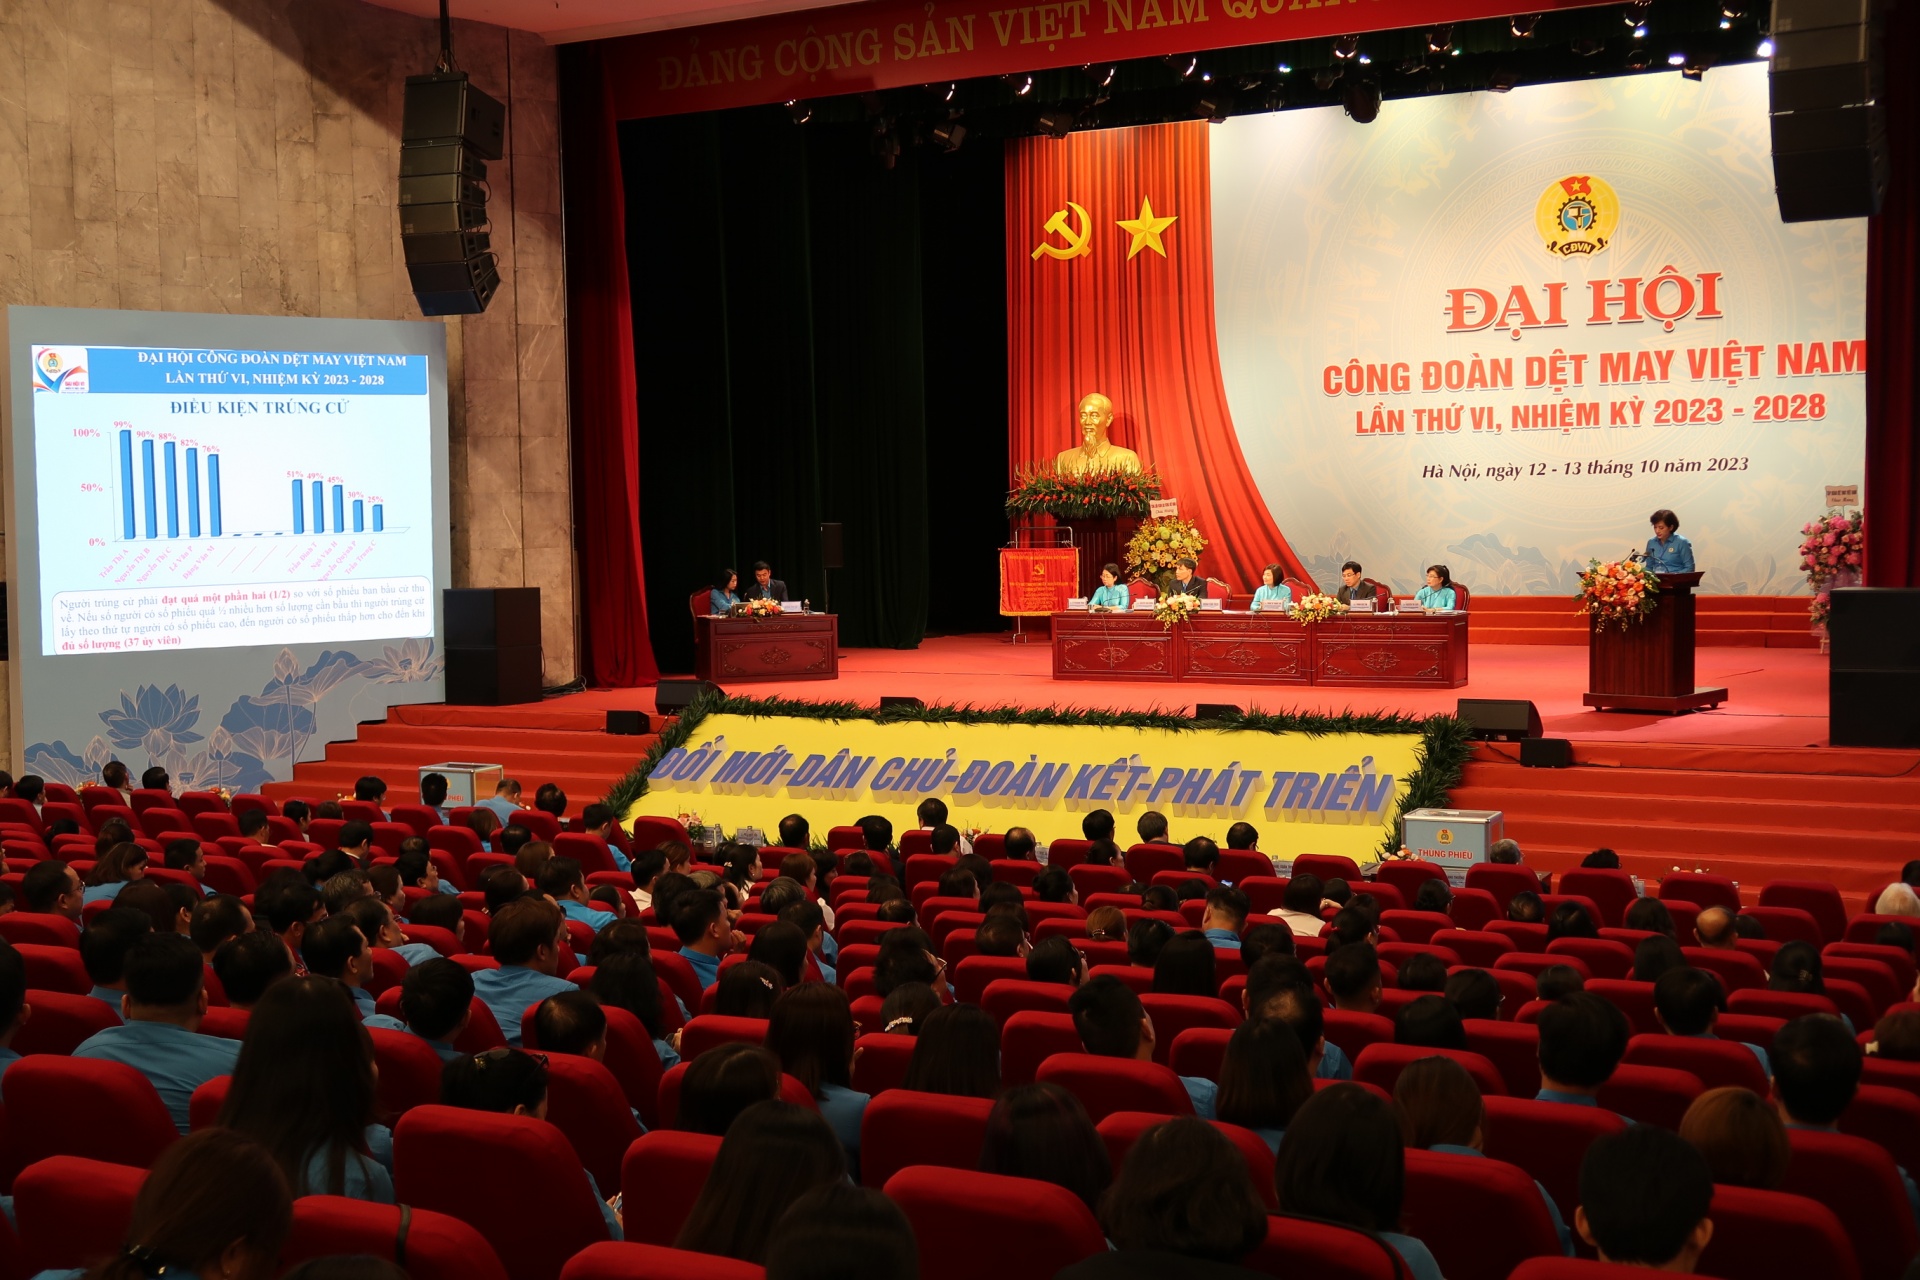 Đại hội Công đoàn Dệt May Việt Nam: Mục tiêu vì việc làm, đời sống người lao động